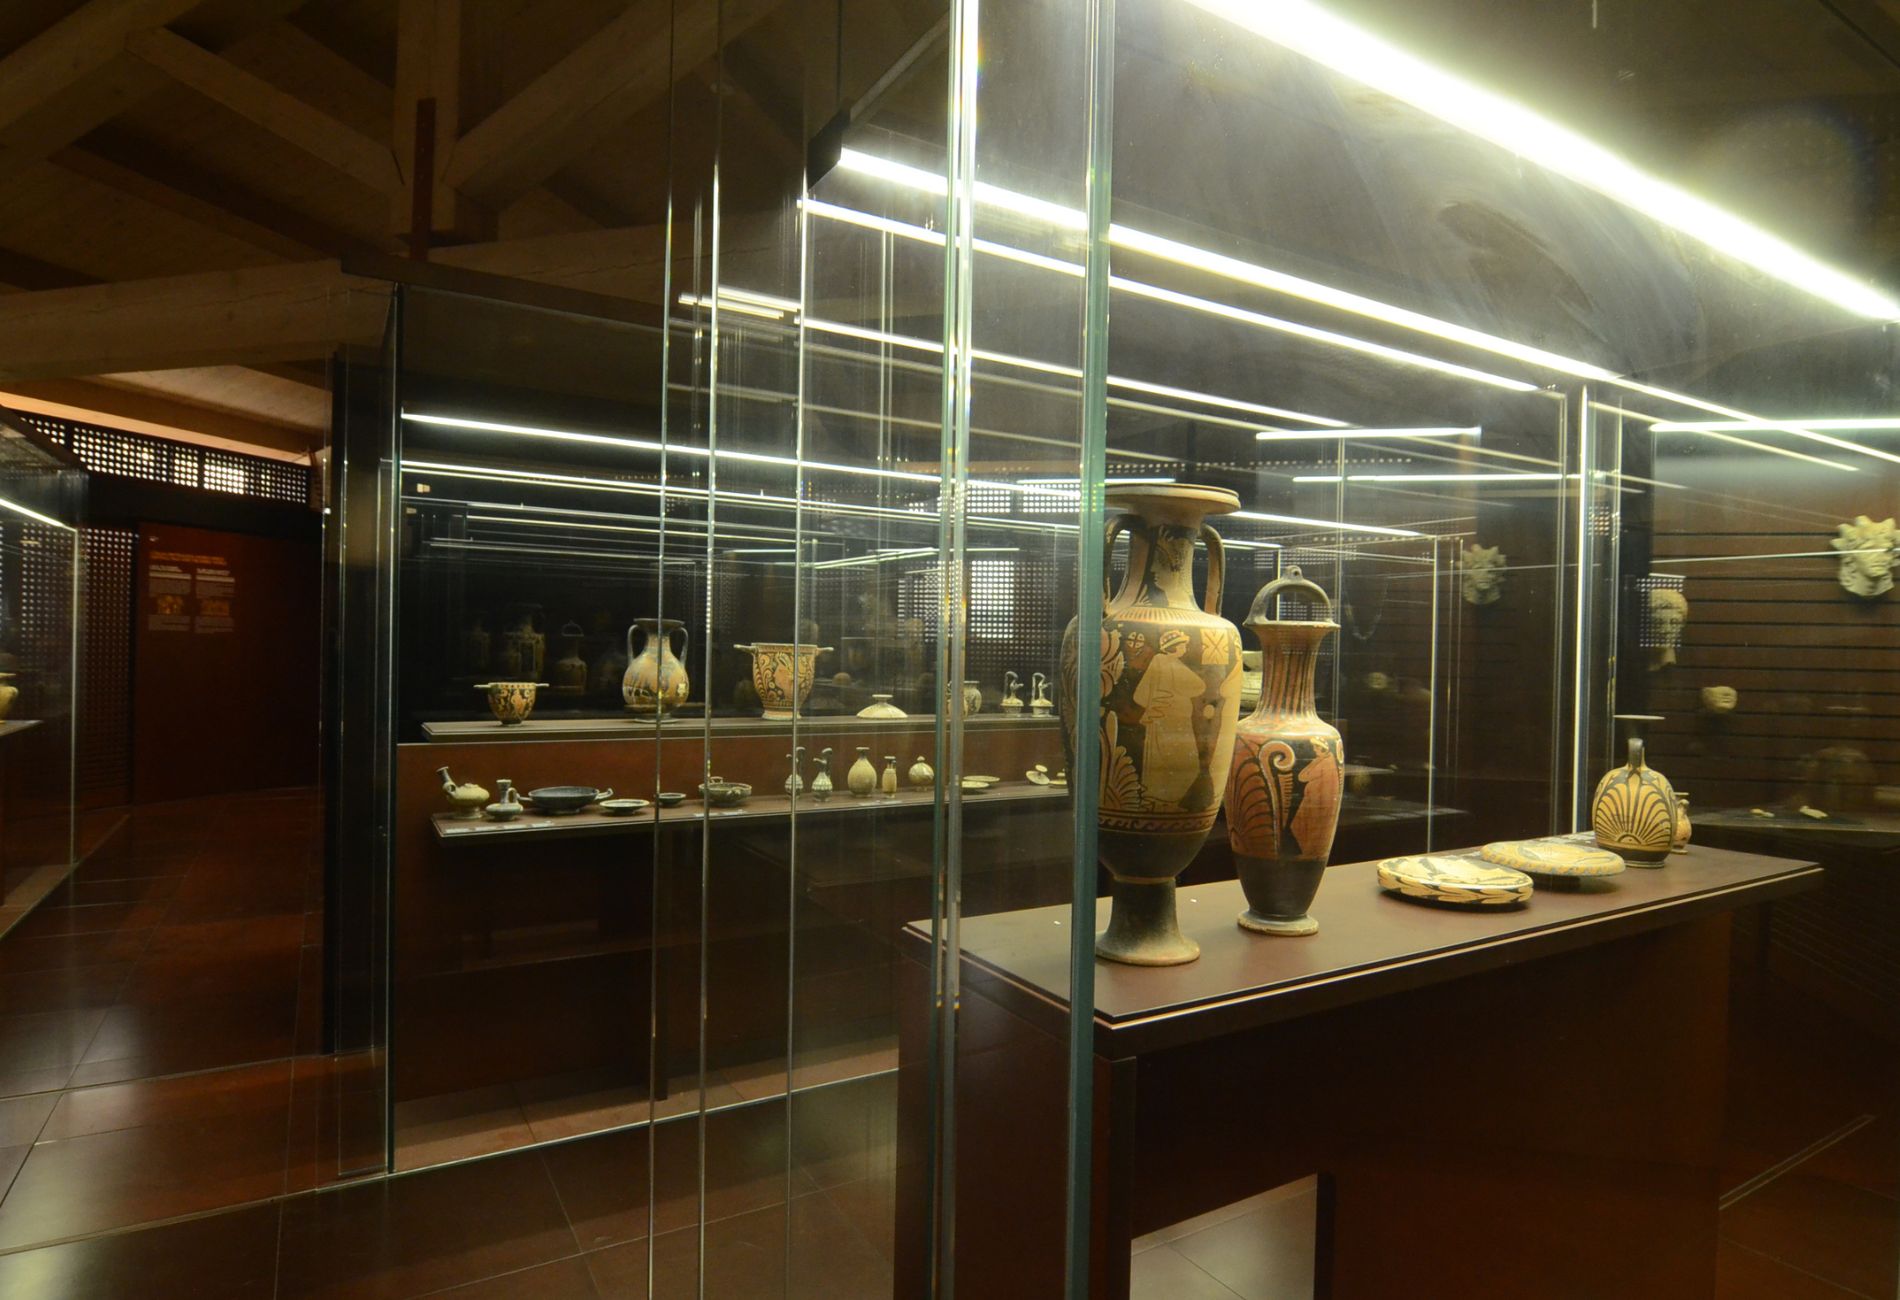 Colección arqueológica de Pallavicini en Trequanda